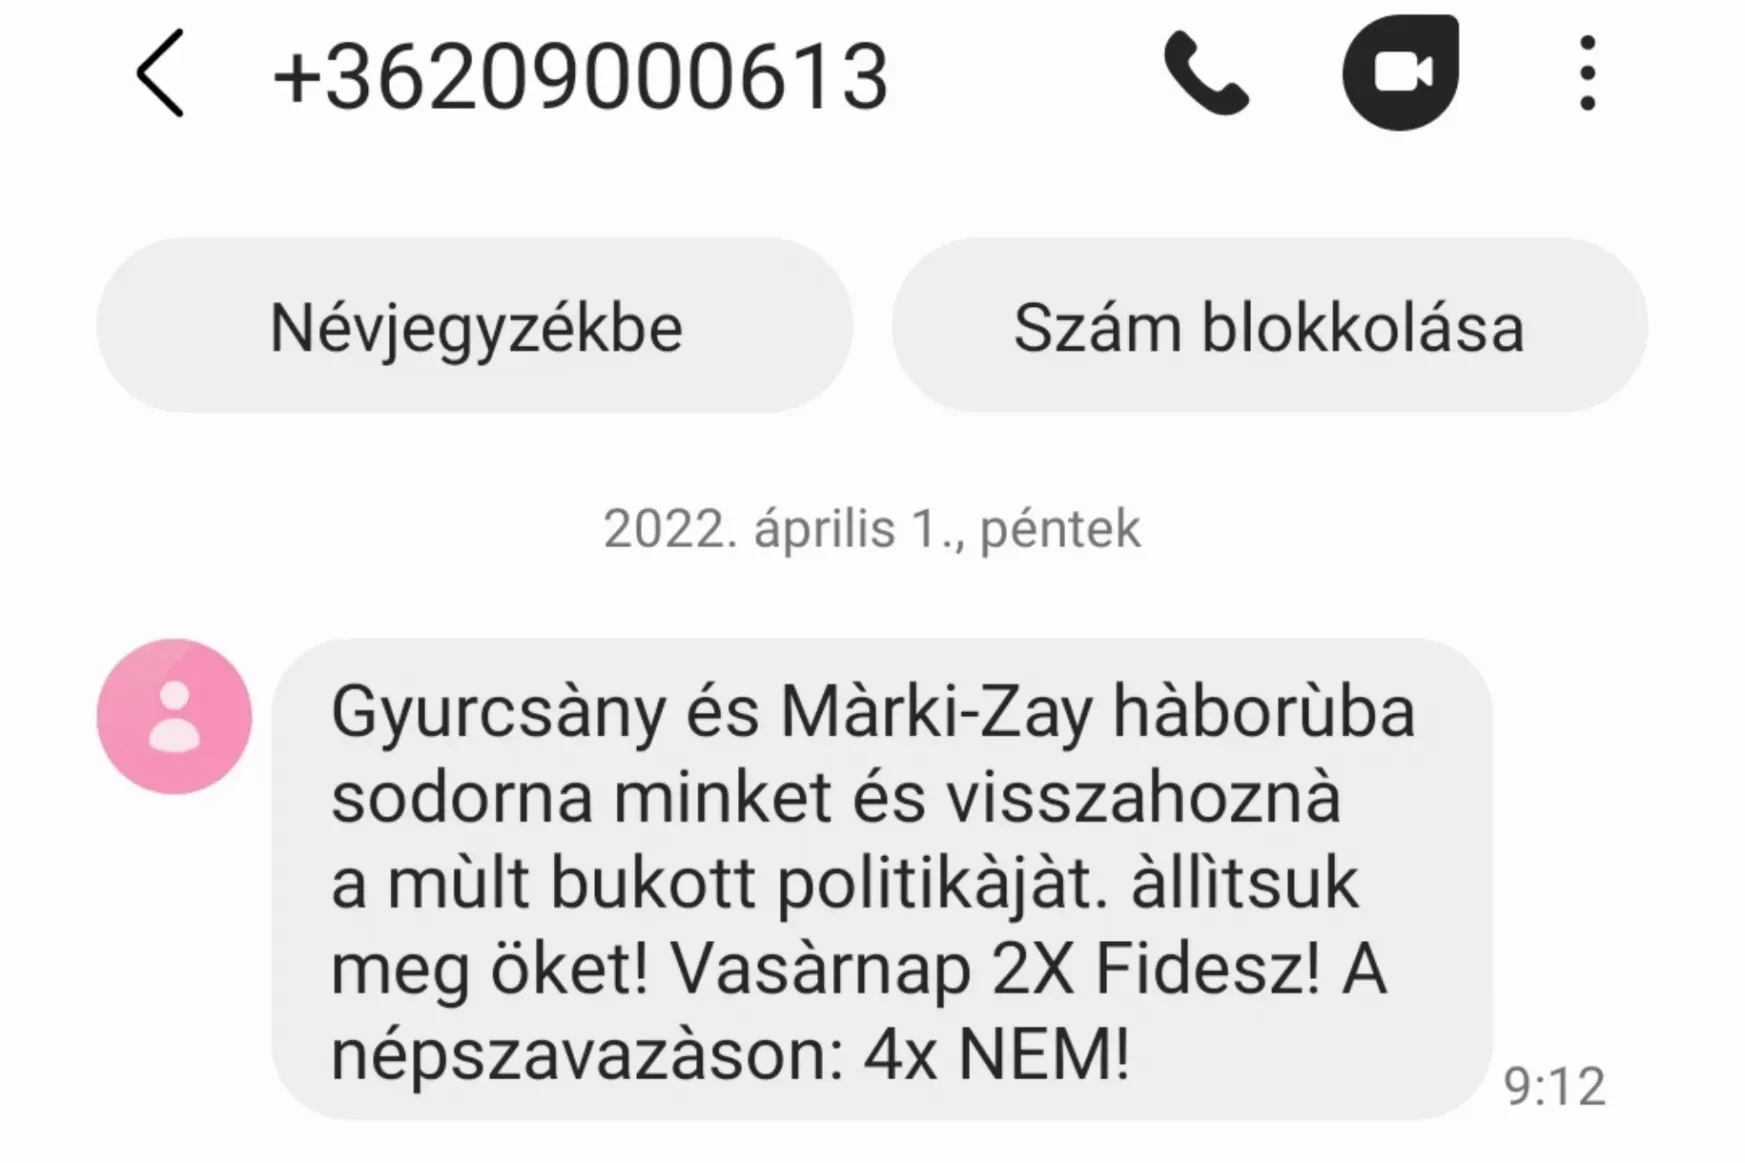 Névtelen sms-ben küldözgetik a Fidesz választási jelszavait